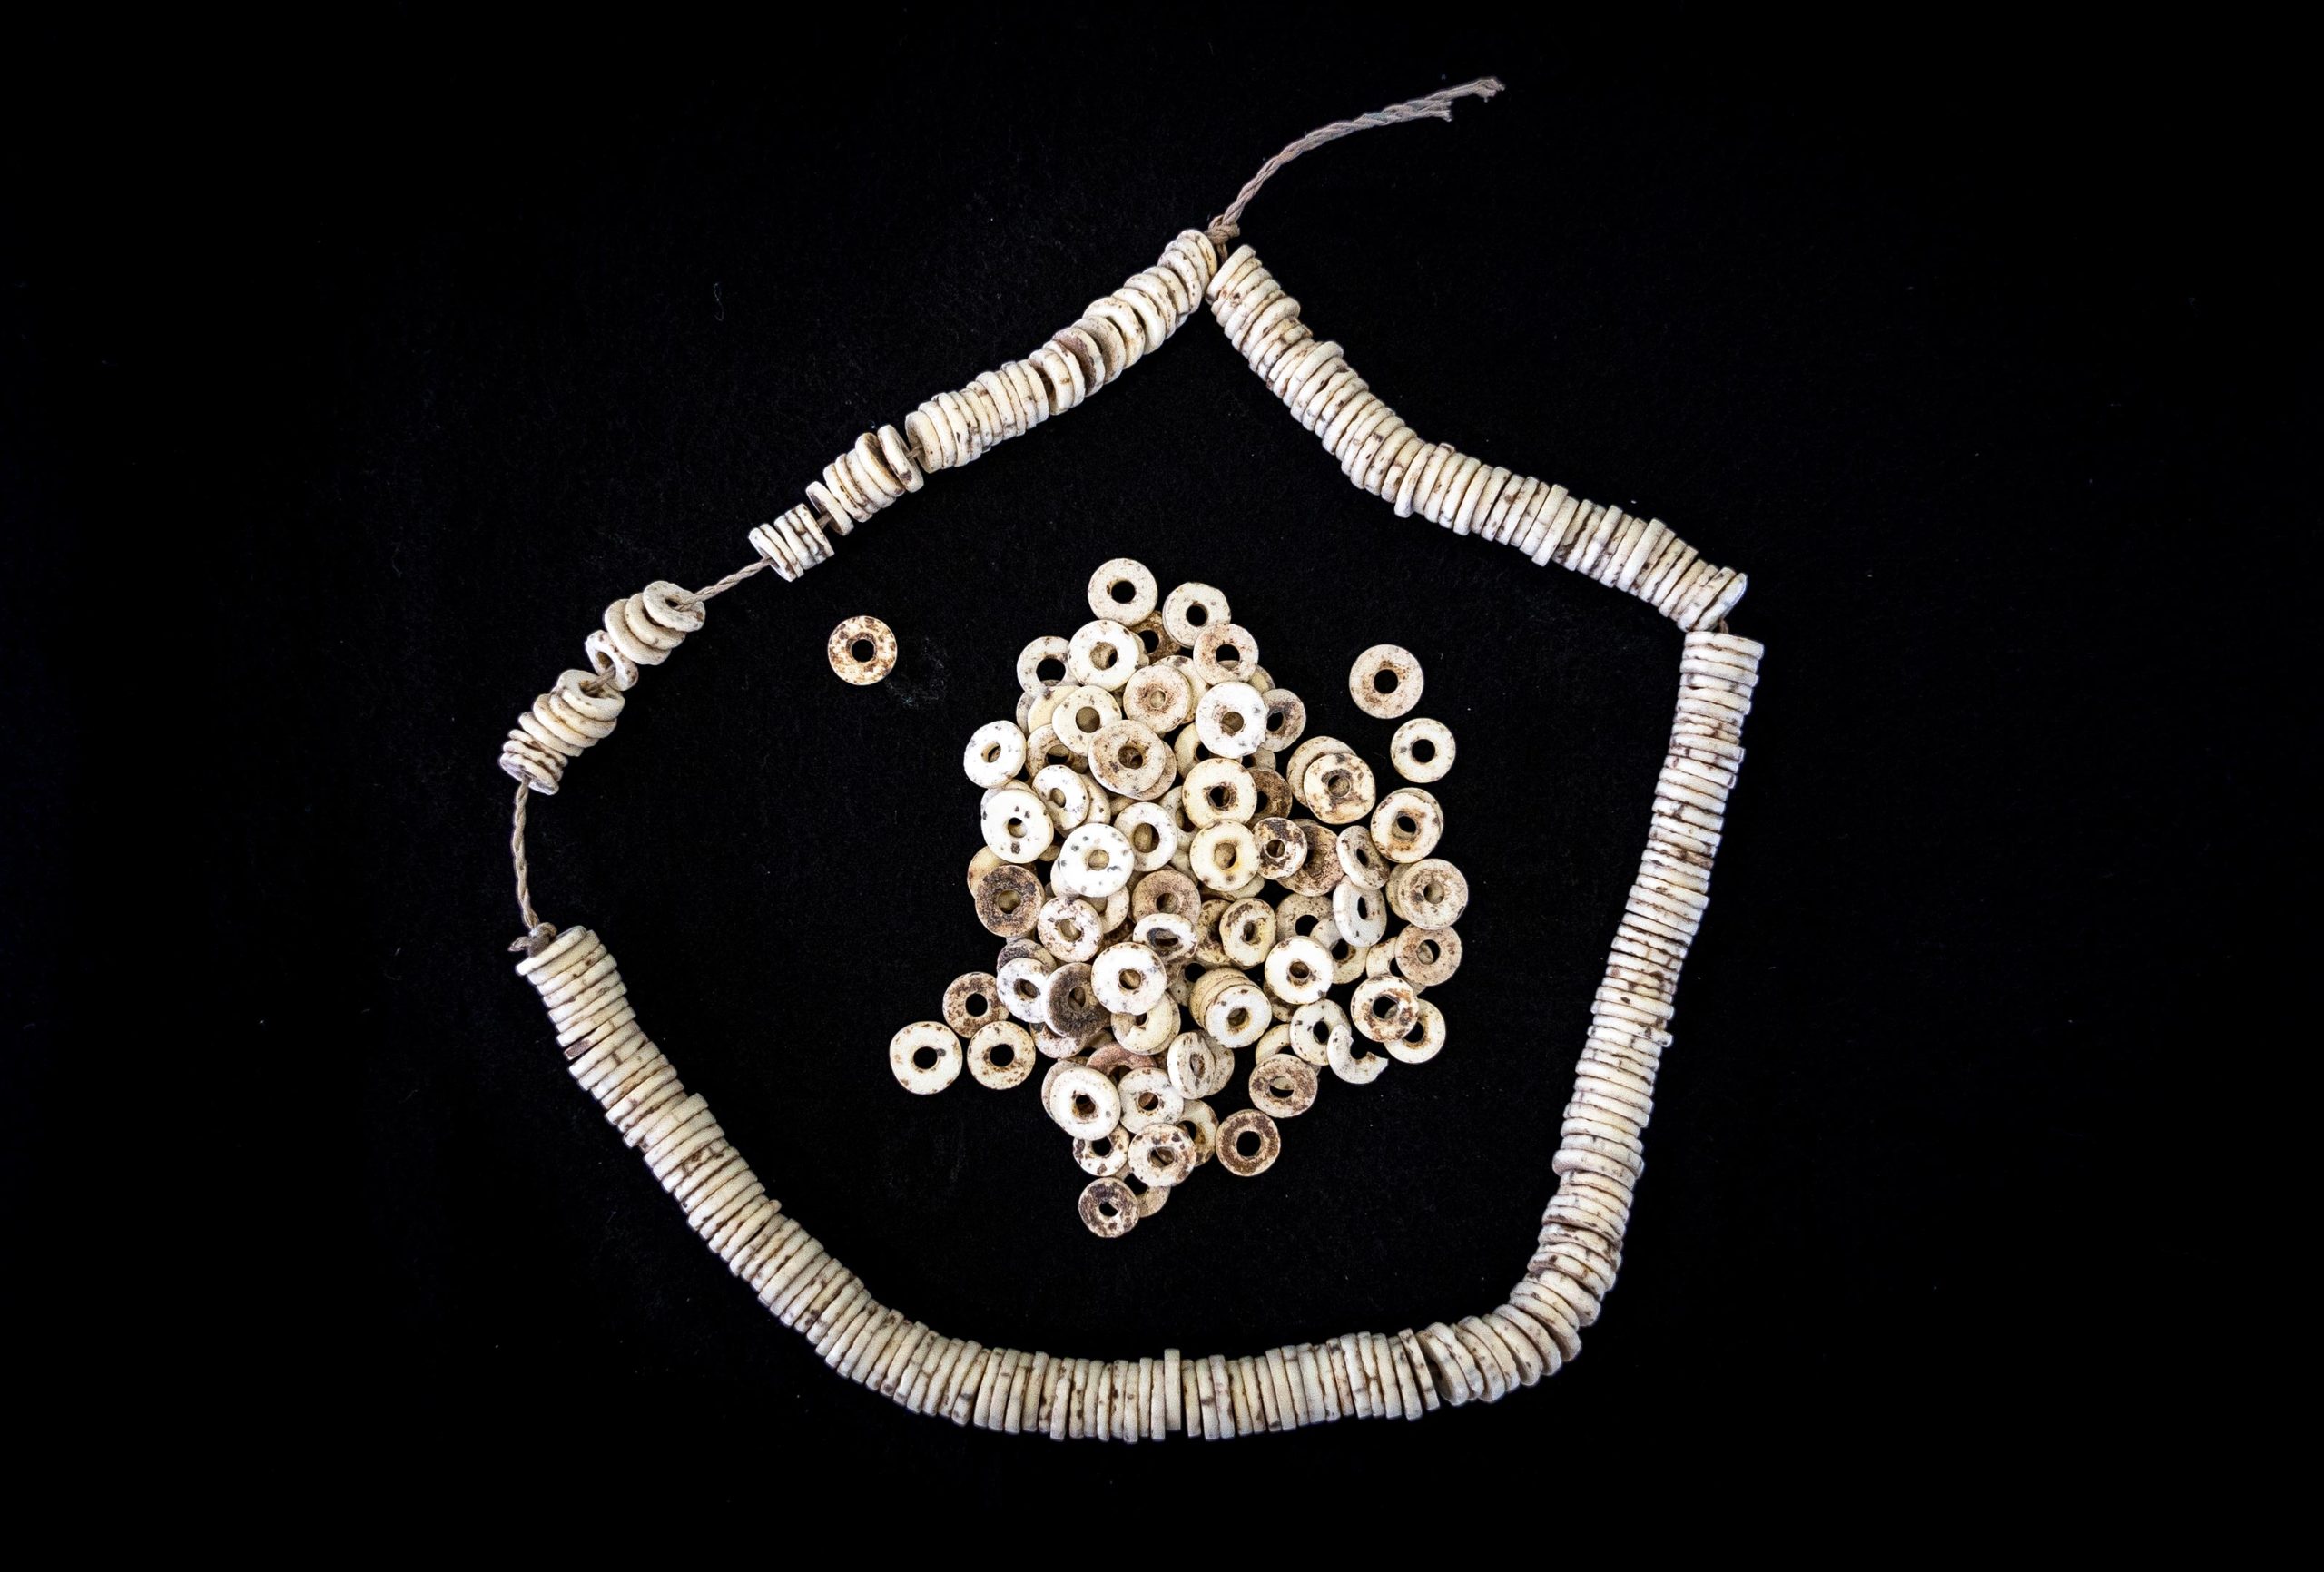 古老鸵鸟蛋壳珠子揭示非洲大陆跨度长达5万年的人类社会联系